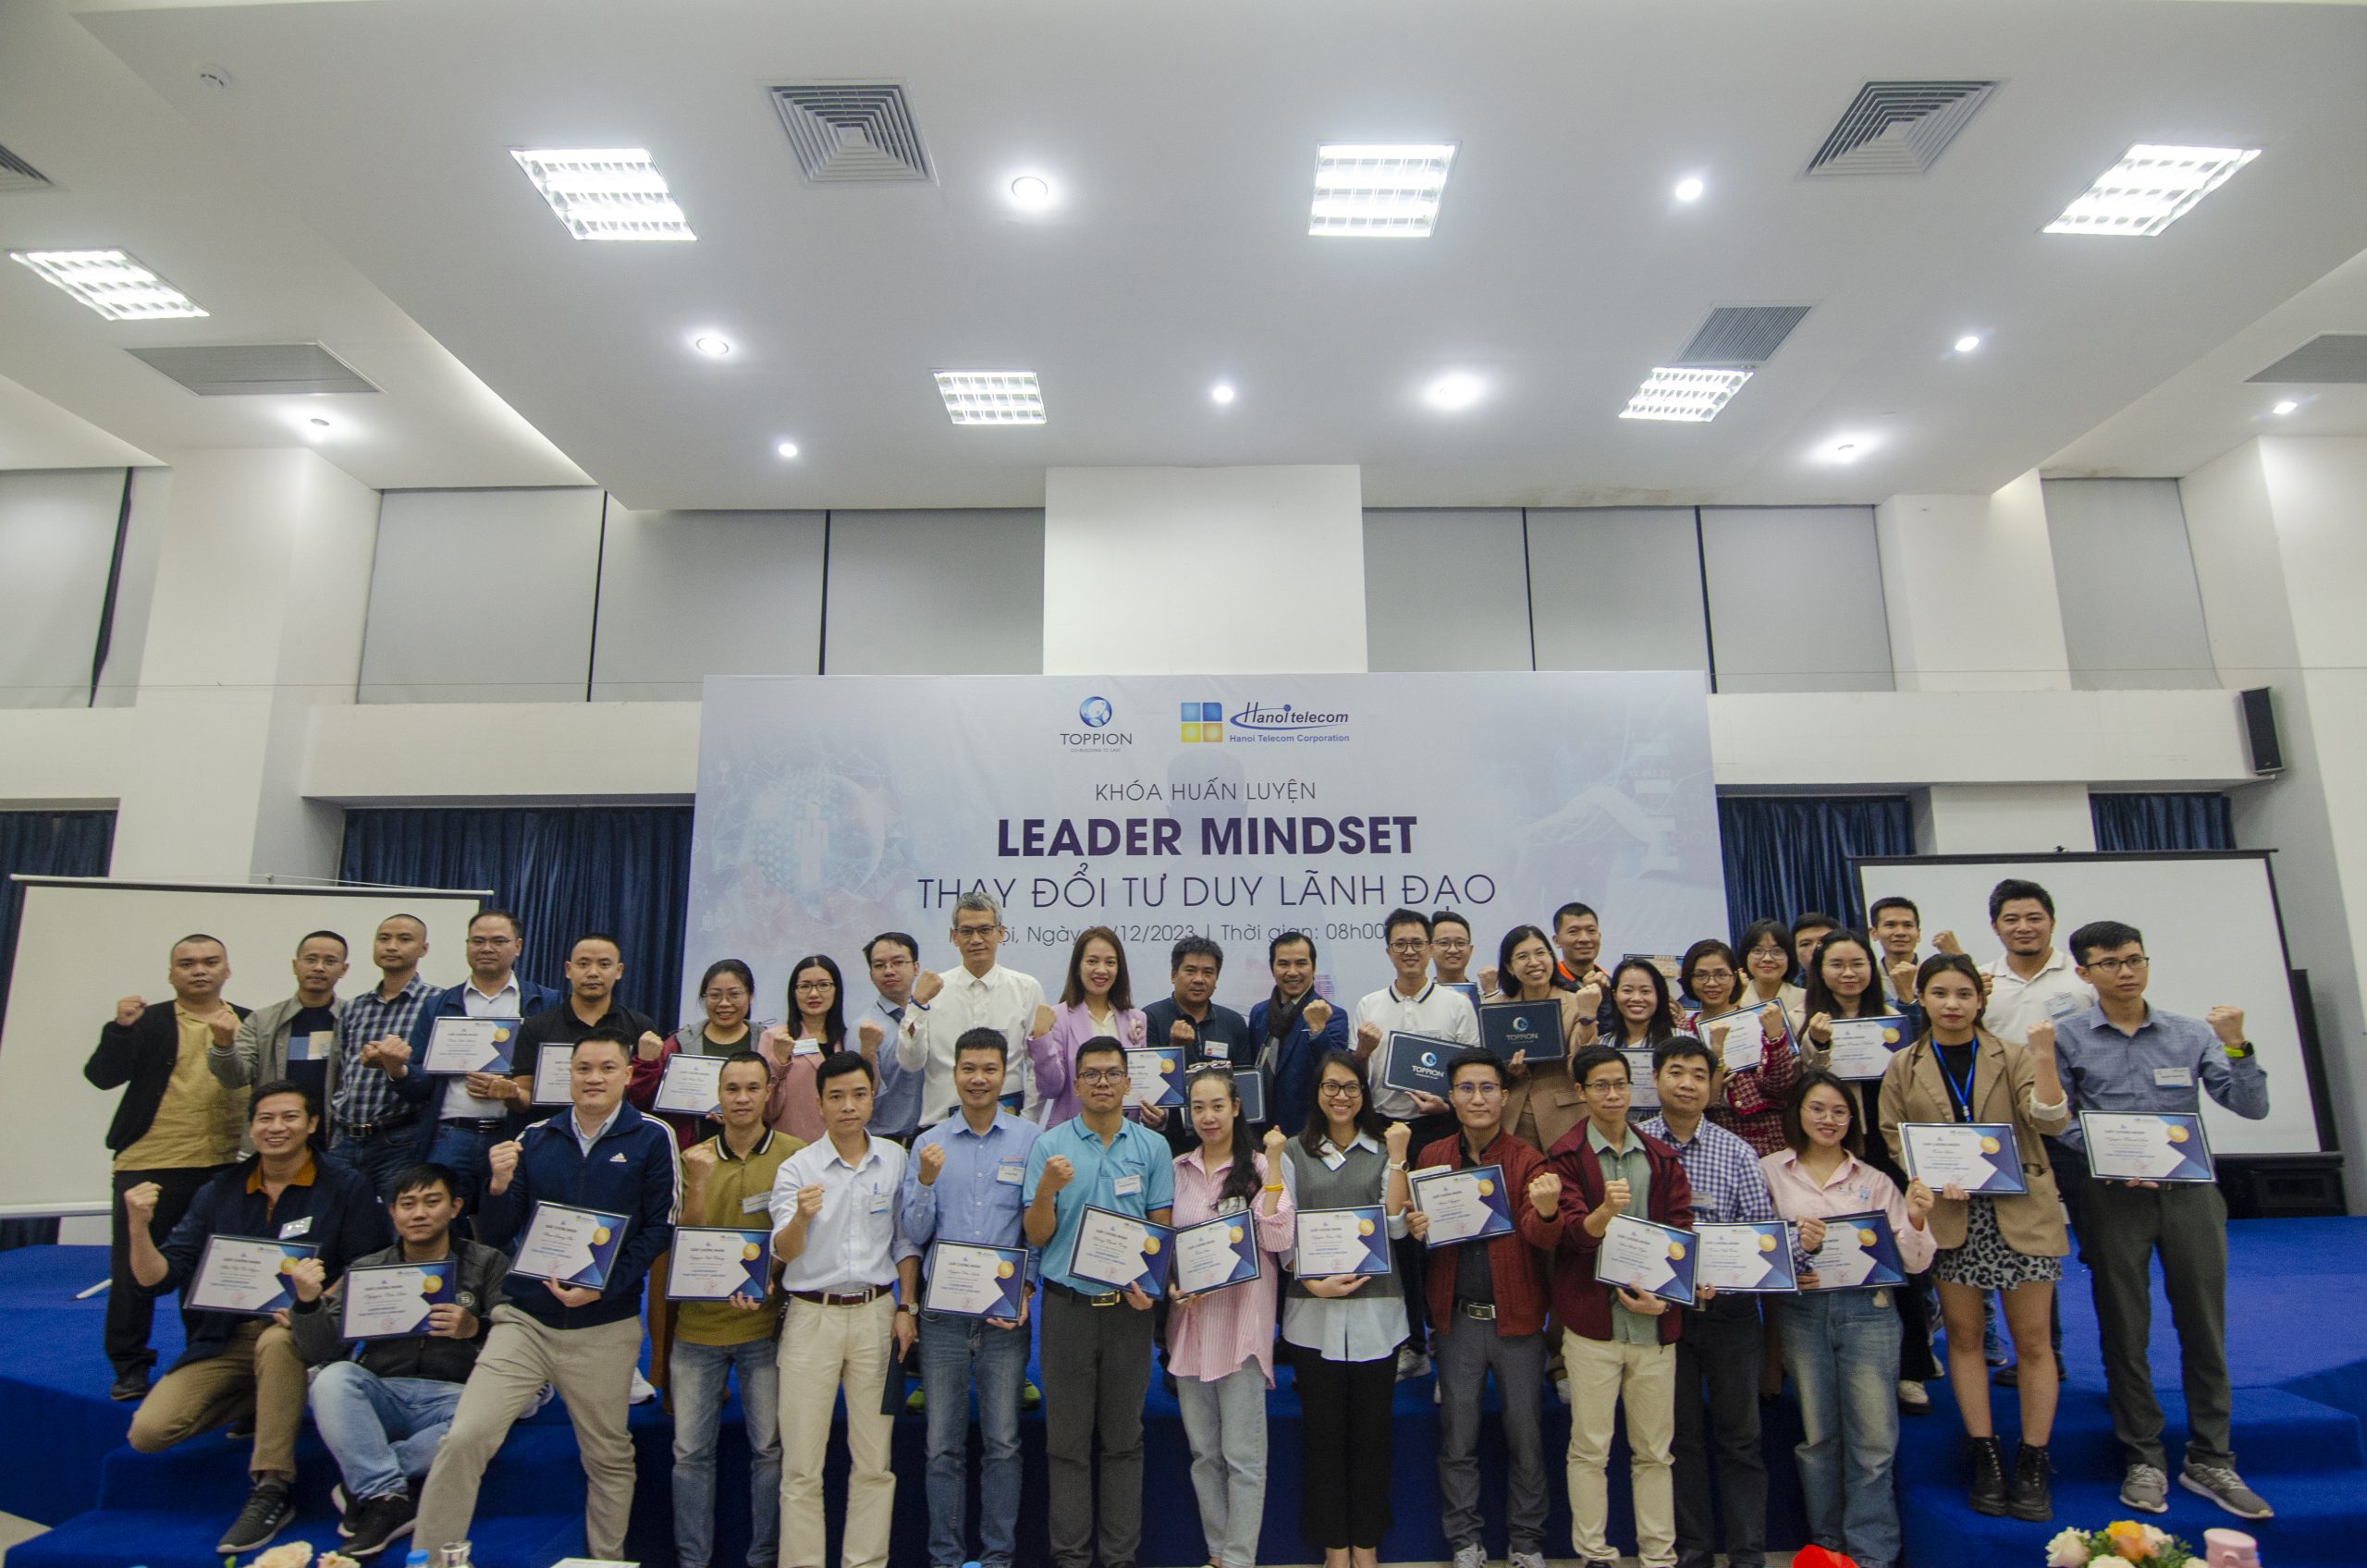 Hanoi Telecom tổ chức khóa huẩn luyện “Leader Mindset – Thay đổi tư duy lãnh đạo”